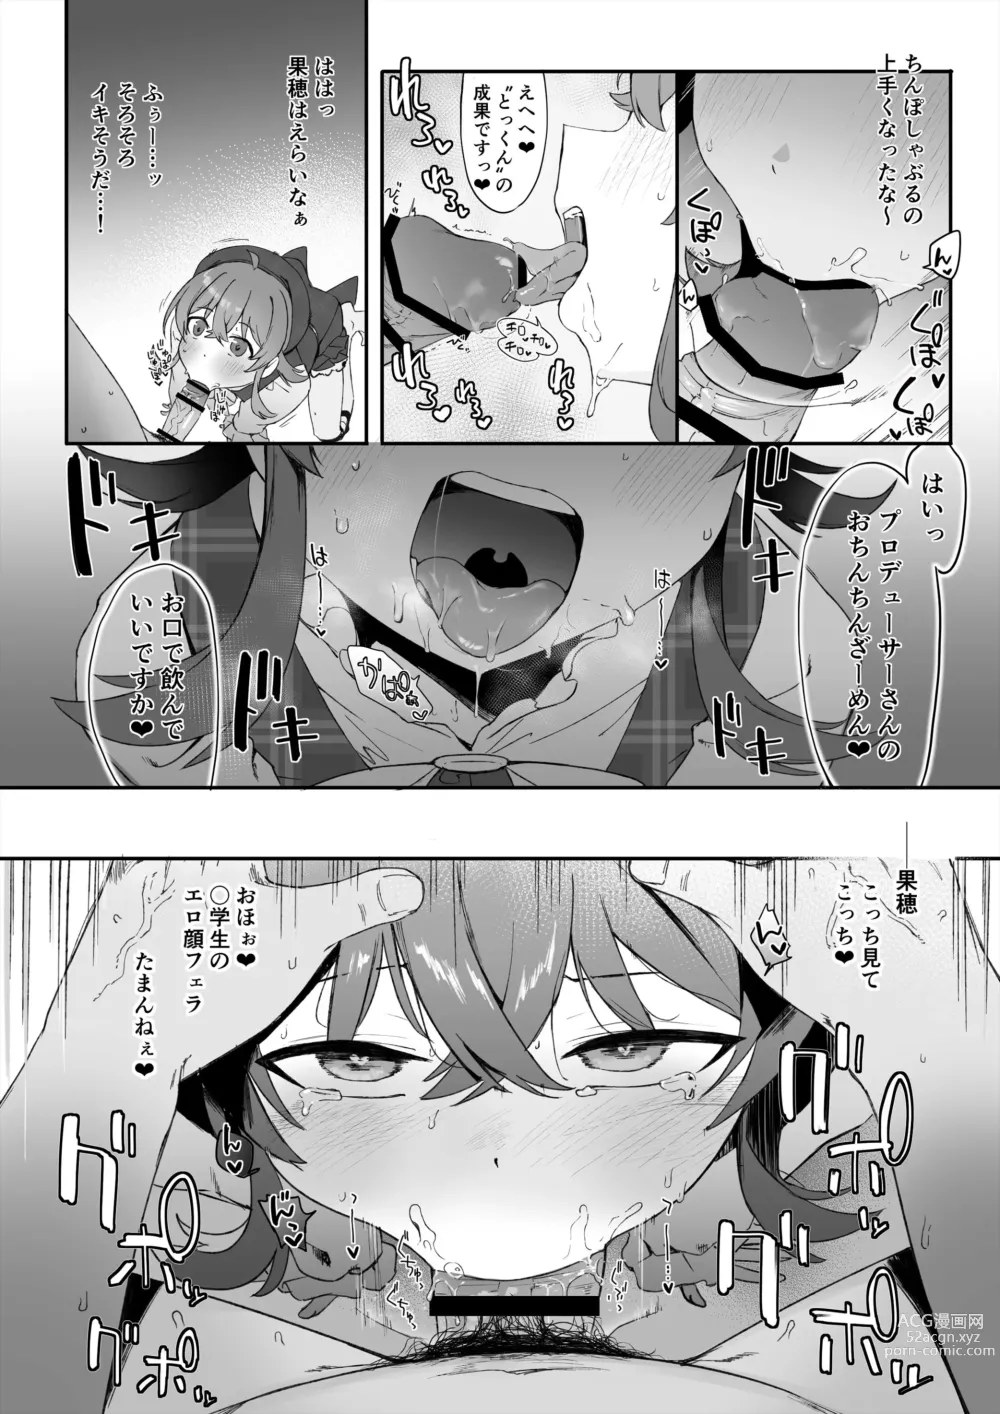 Page 5 of doujinshi Chinpo Kagi suru Kaho + 4P Fella Manga